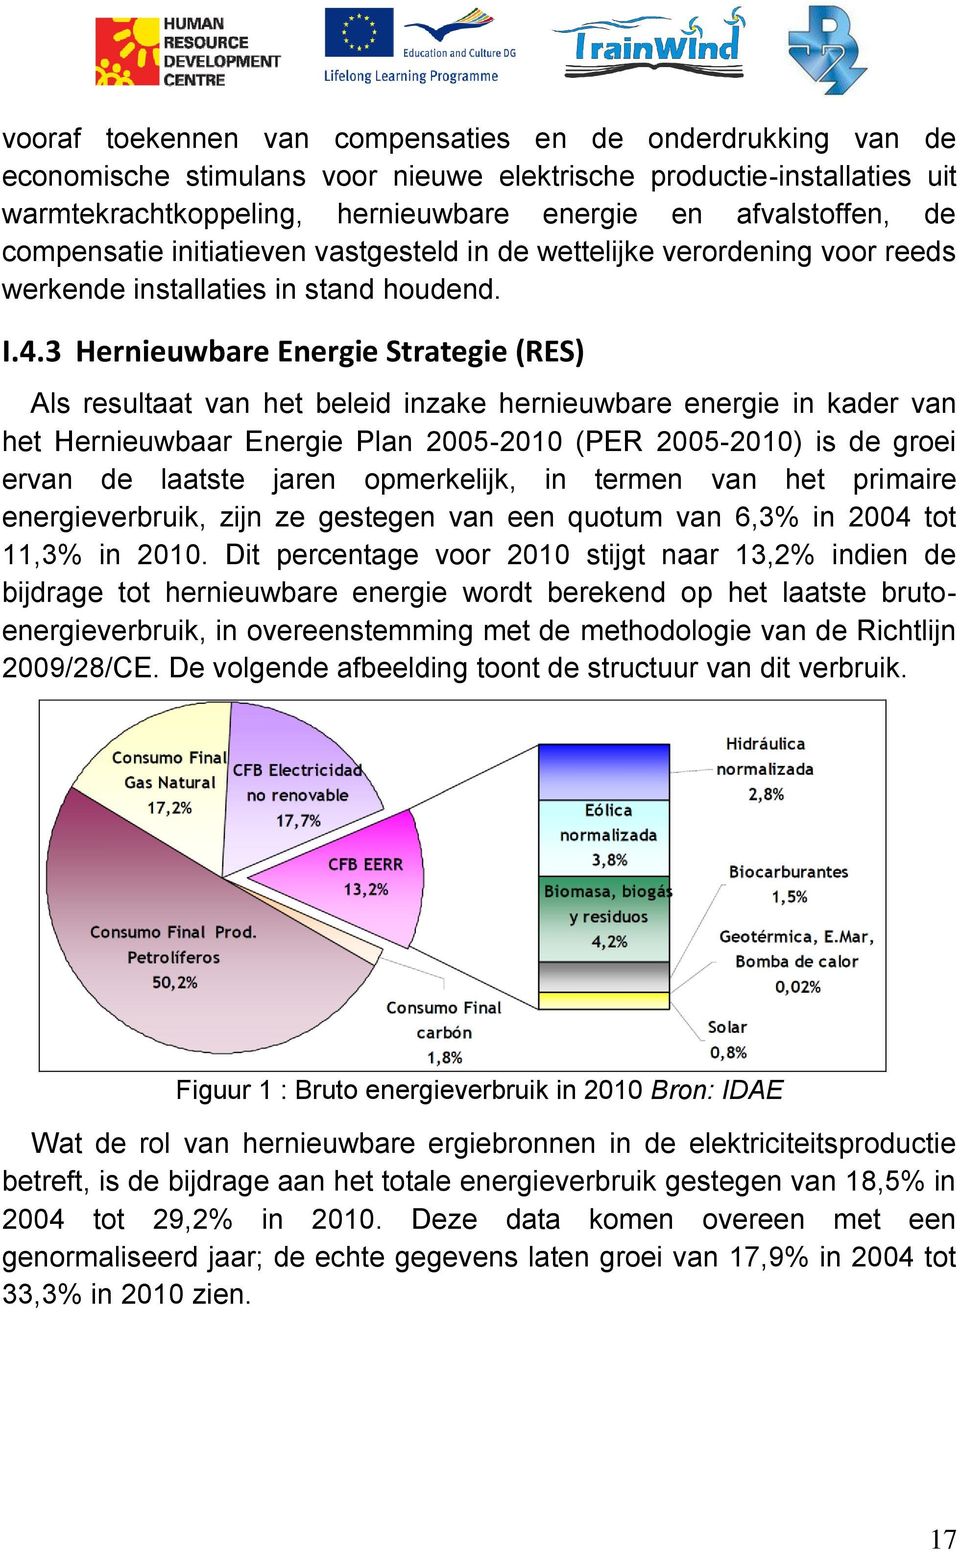 3 Hernieuwbare Energie Strategie (RES) Als resultaat van het beleid inzake hernieuwbare energie in kader van het Hernieuwbaar Energie Plan 2005-2010 (PER 2005-2010) is de groei ervan de laatste jaren